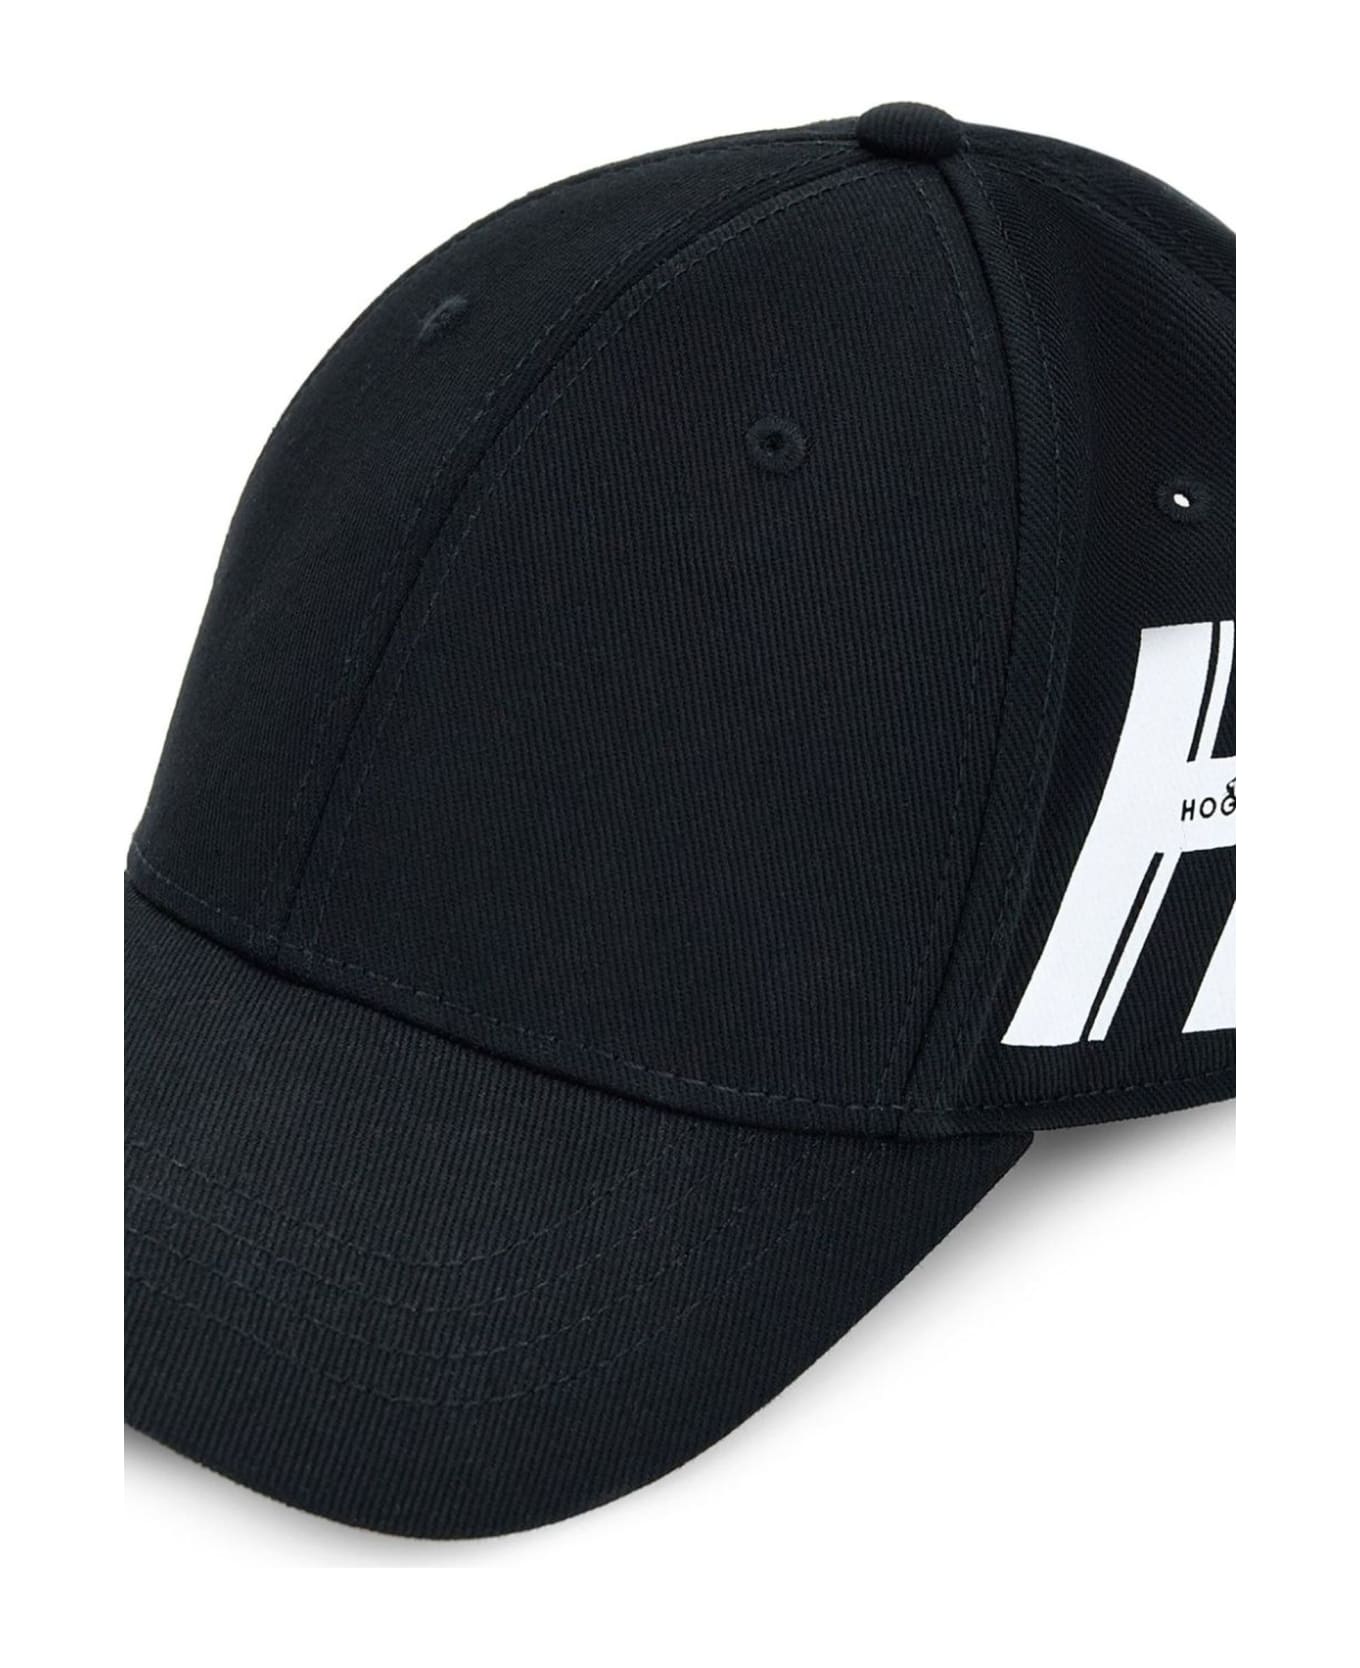 Hogan Hats Black - Black 帽子